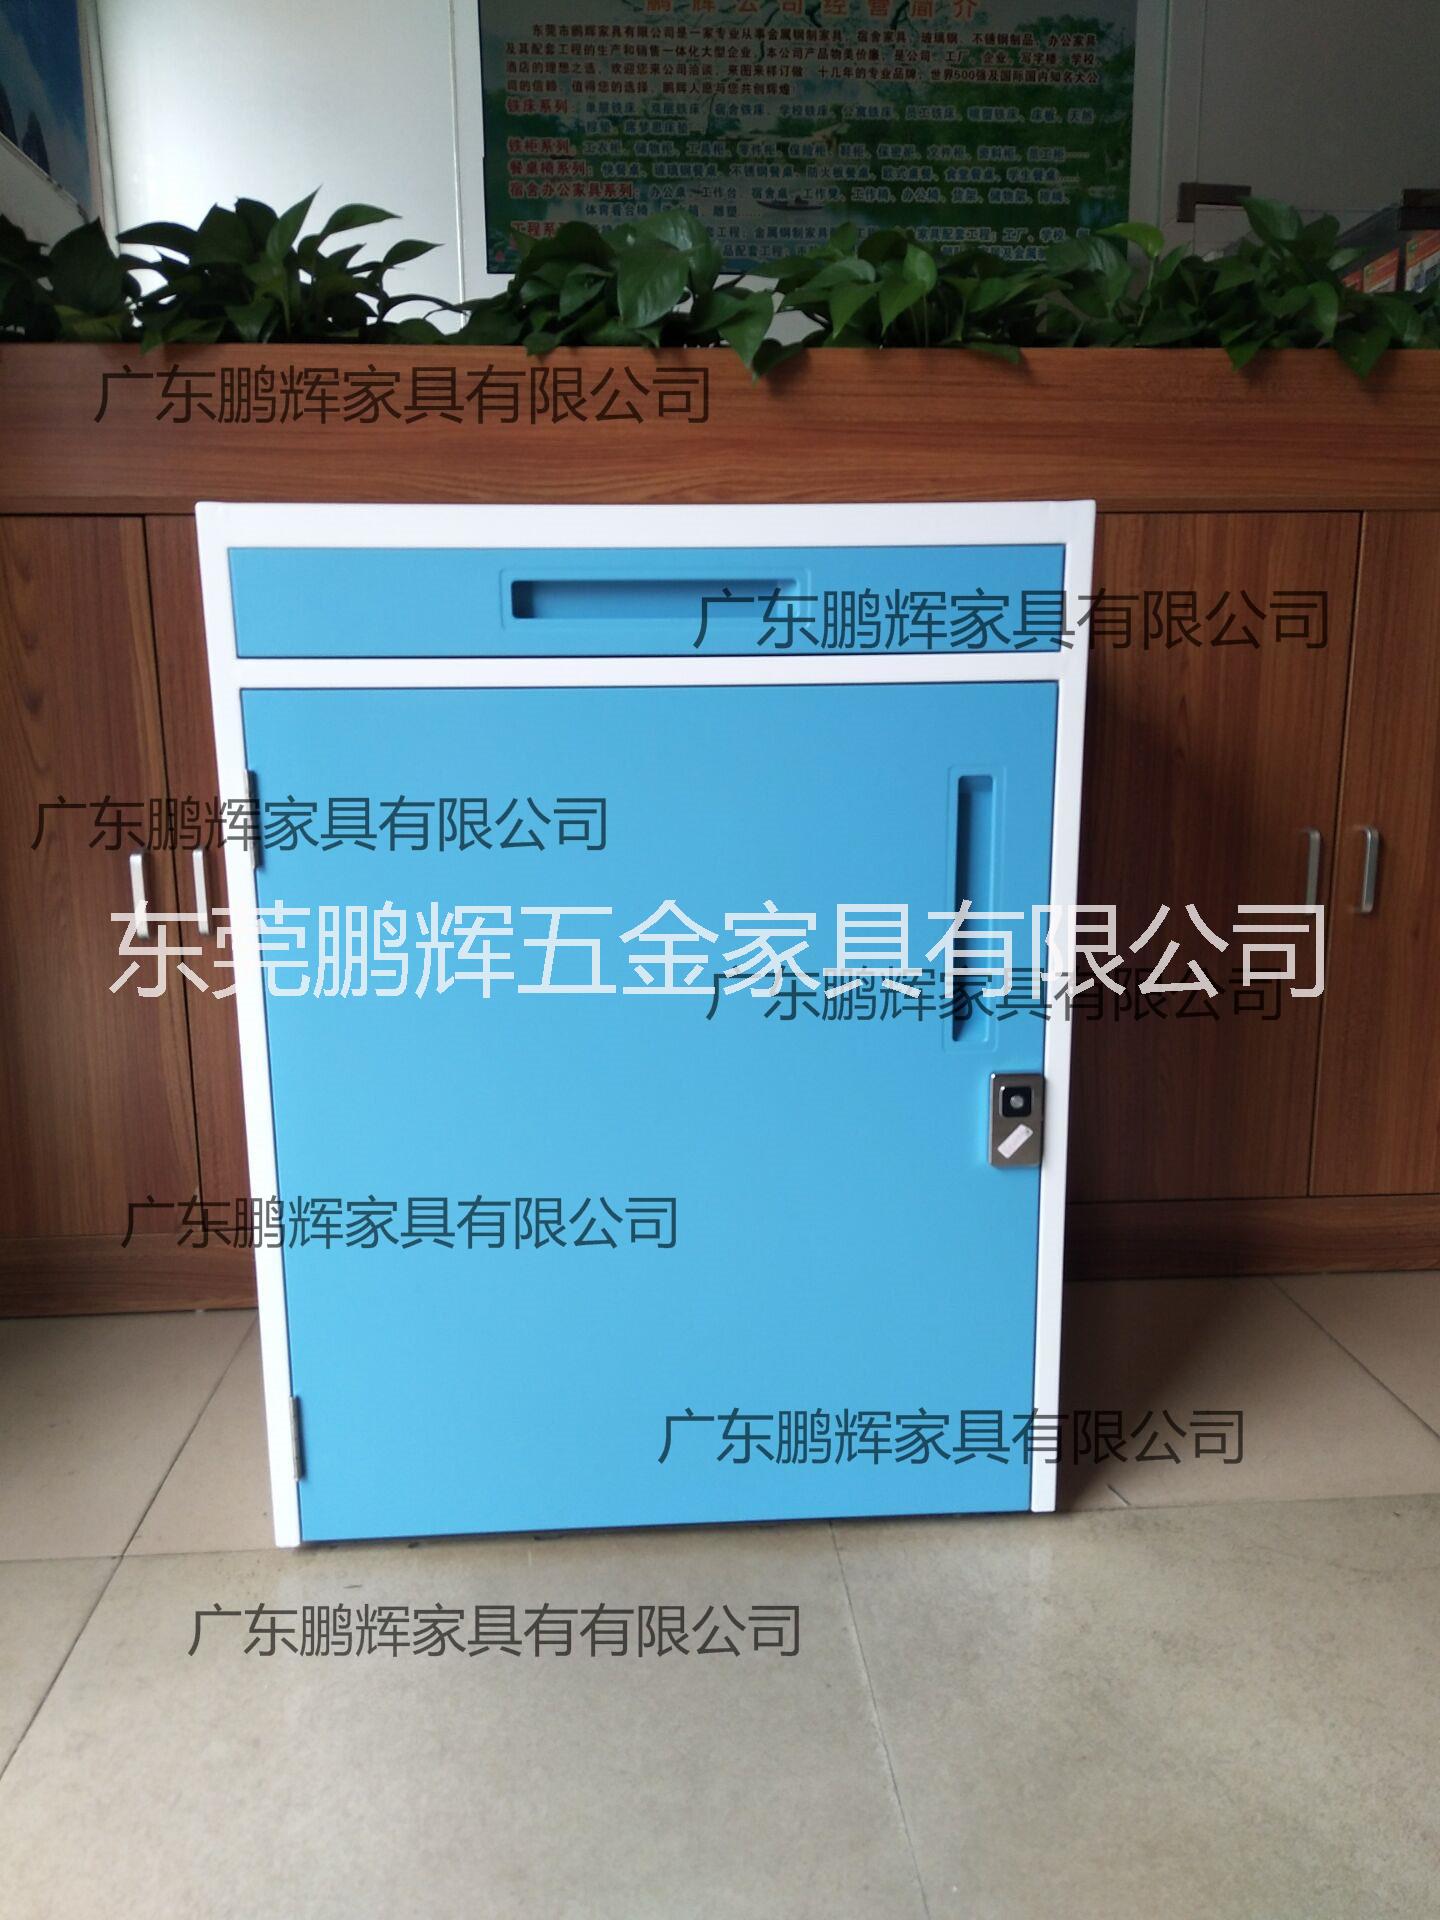 广东鹏辉家具专业生产共享陪护床柜、折叠陪护床、陪护床图片